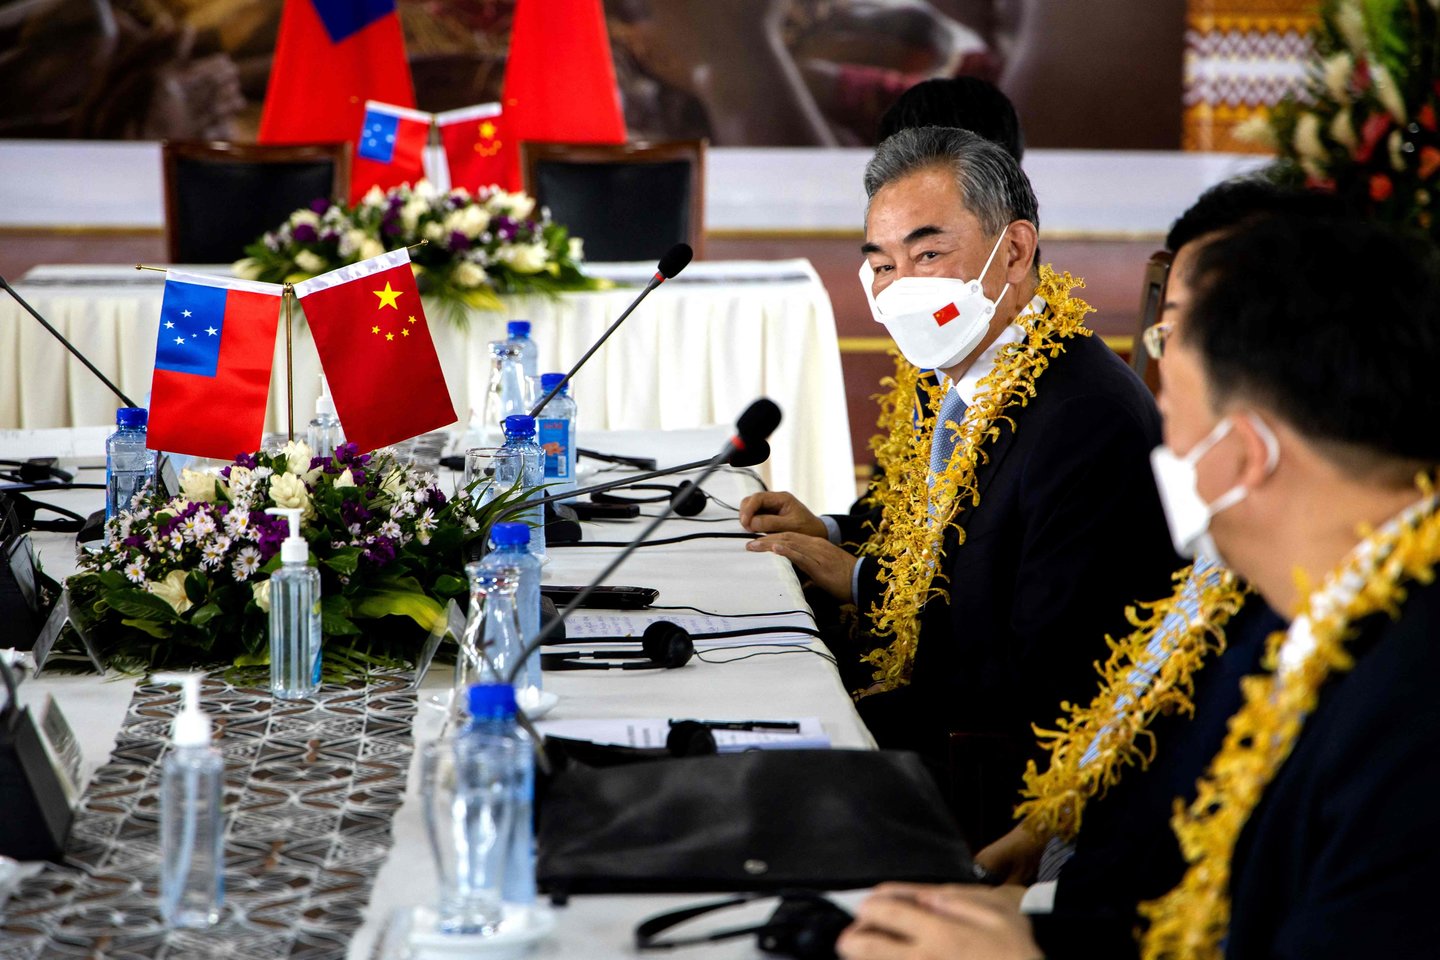 Kinijos užsienio reikalų ministras Wang Yi susitiko su Samoa ministru pirmininku Fiame Naomi Mataafa po Kinijos ir Samoa susitarimų pasirašymo ceremonijos.<br>AFP/Scanpix nuotr.